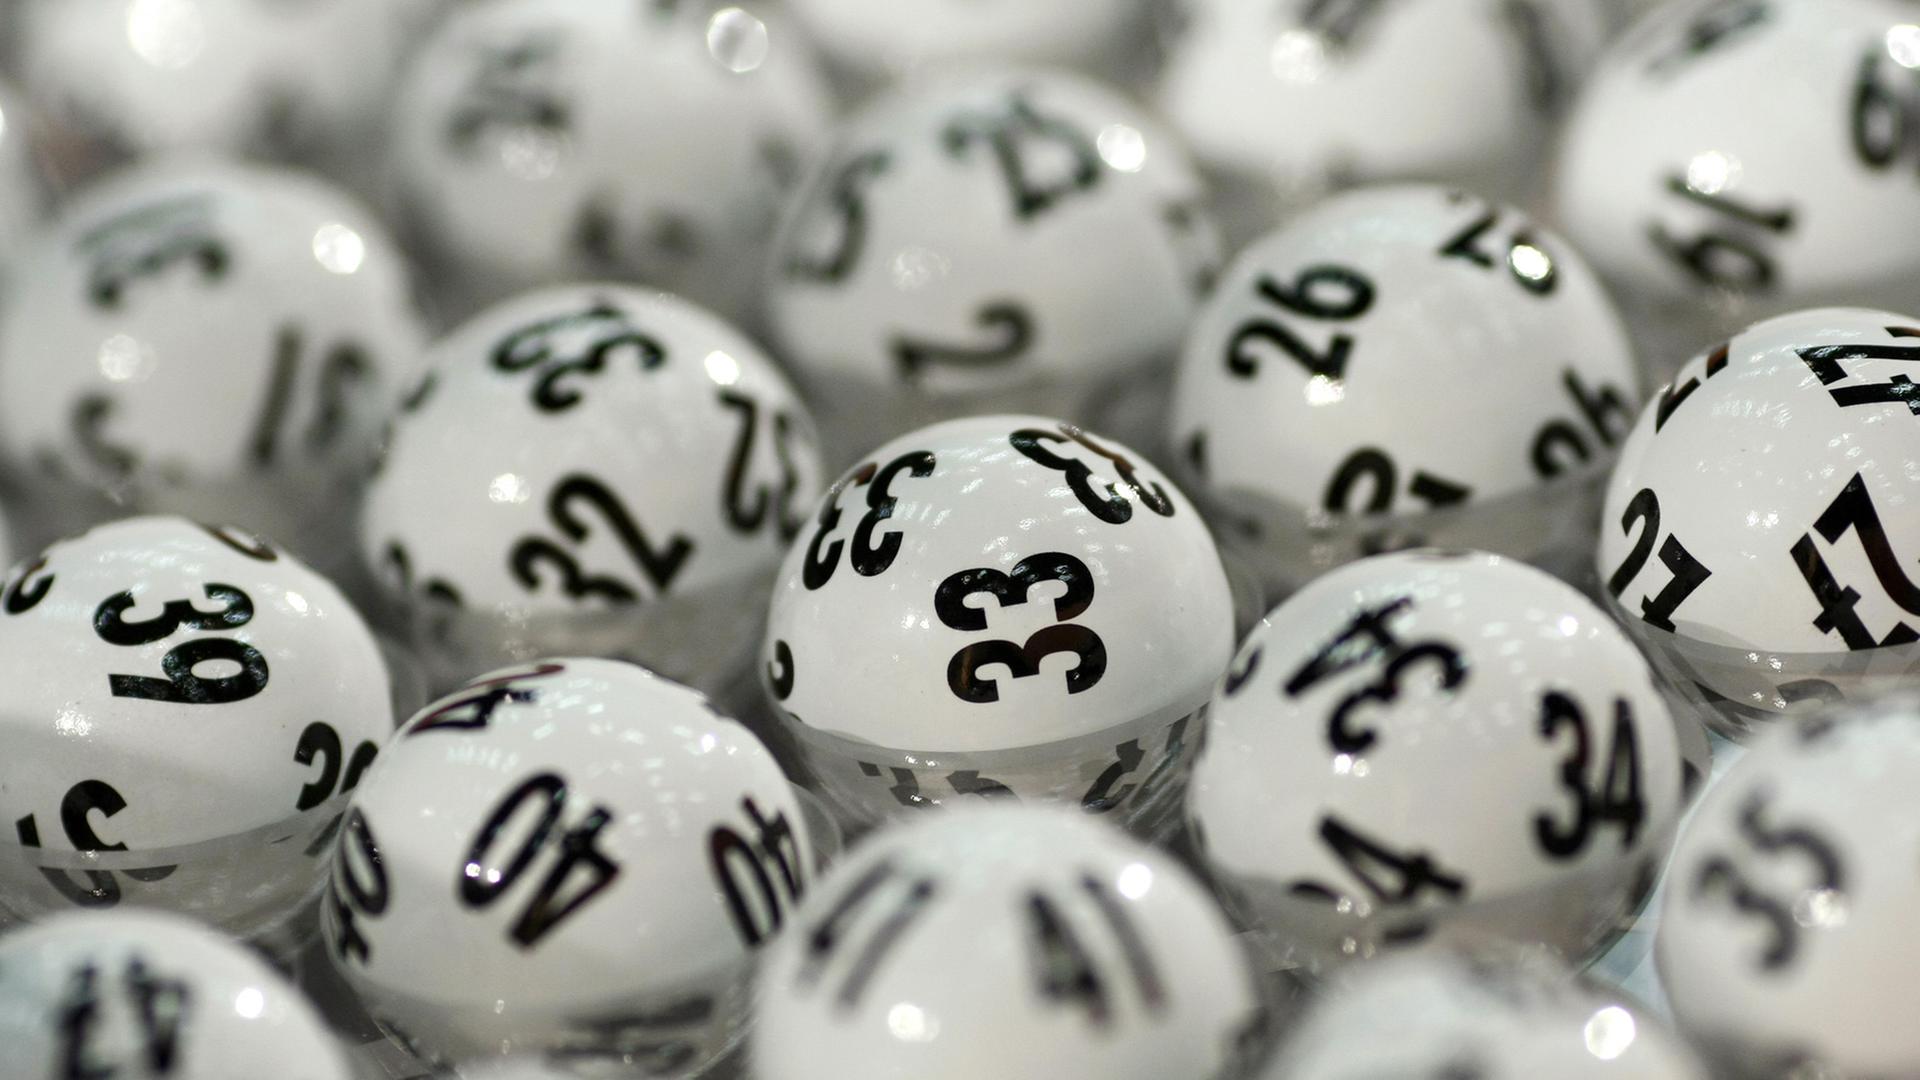 Das Bild zeigt ein gutes Dutzend weiße Lotto-Kugeln, die mit schwarzen Zahlen bedruckt sind. 